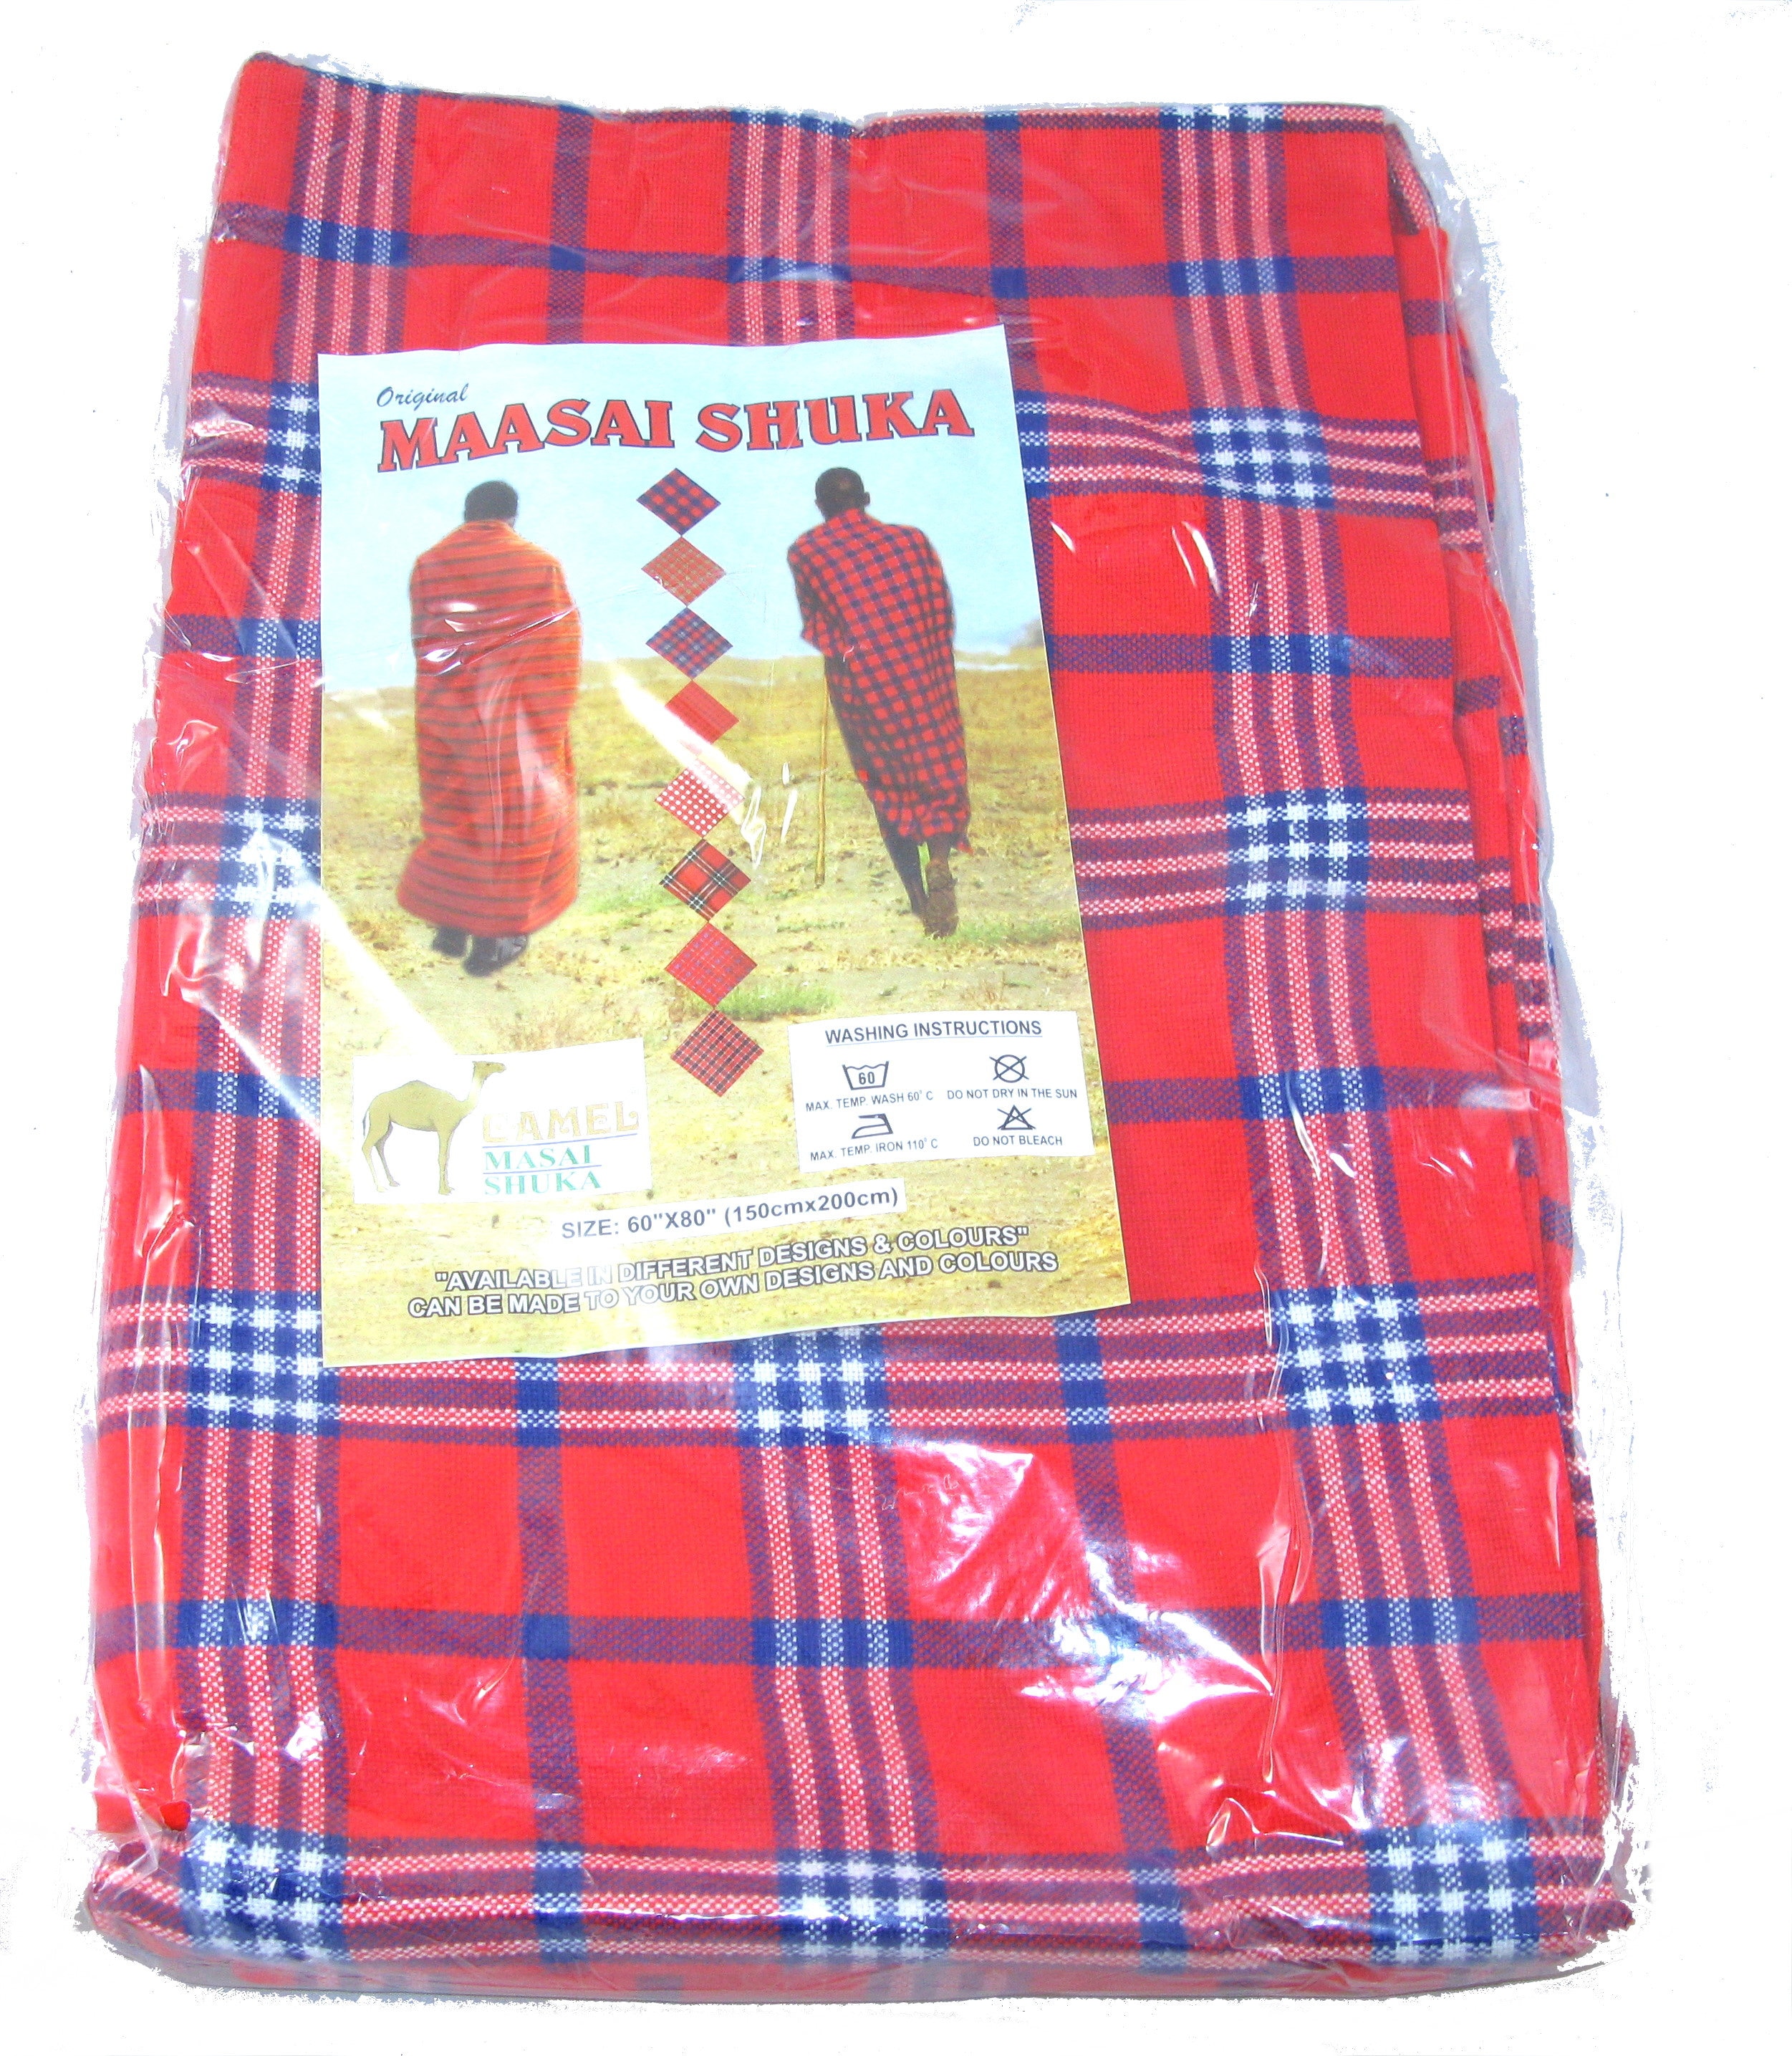 Shuka (Masai blanket) dress  African inspired fashion, Fashion